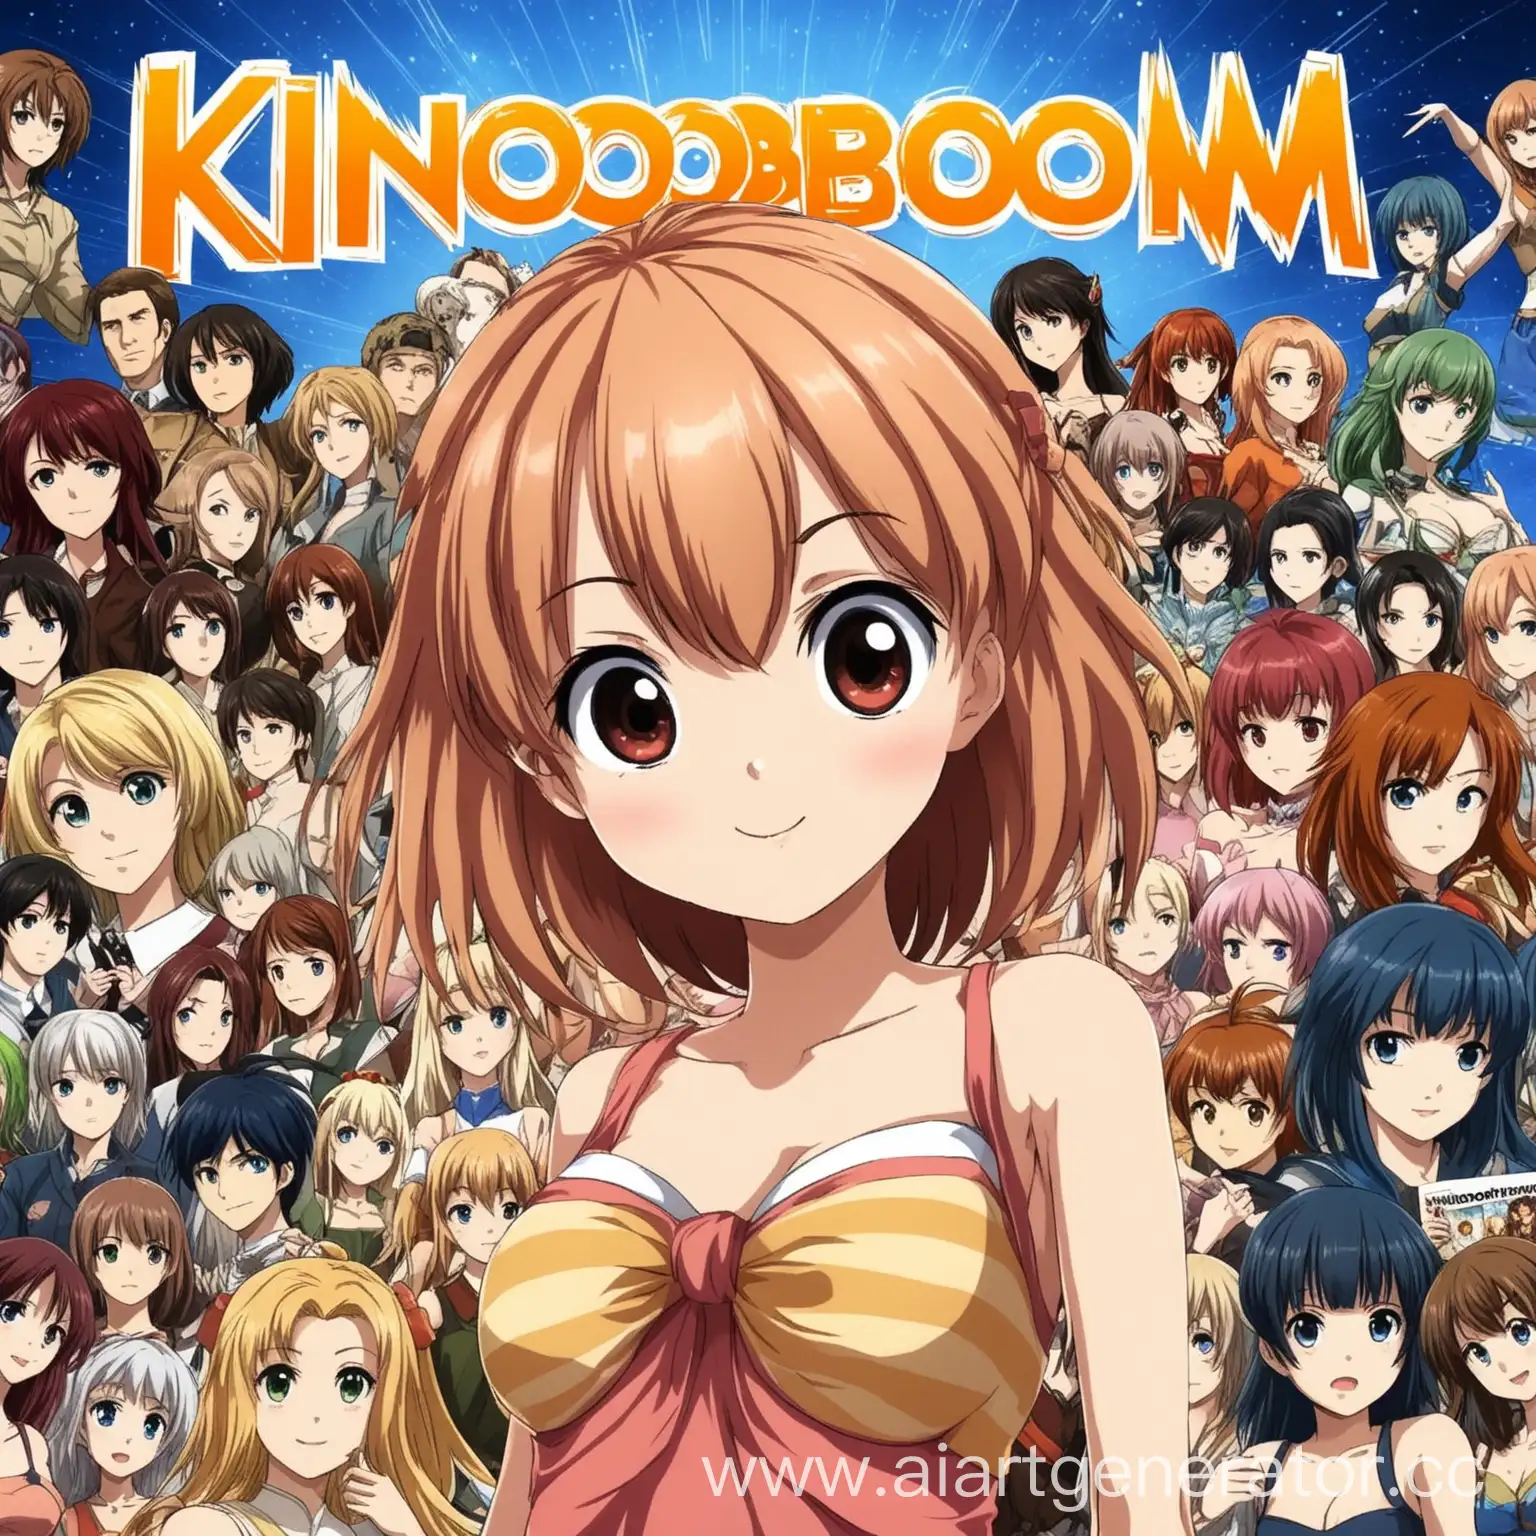 kinoBOOM-Anime-Girl-Vibrant-Character-Illustration-for-Film-Channel